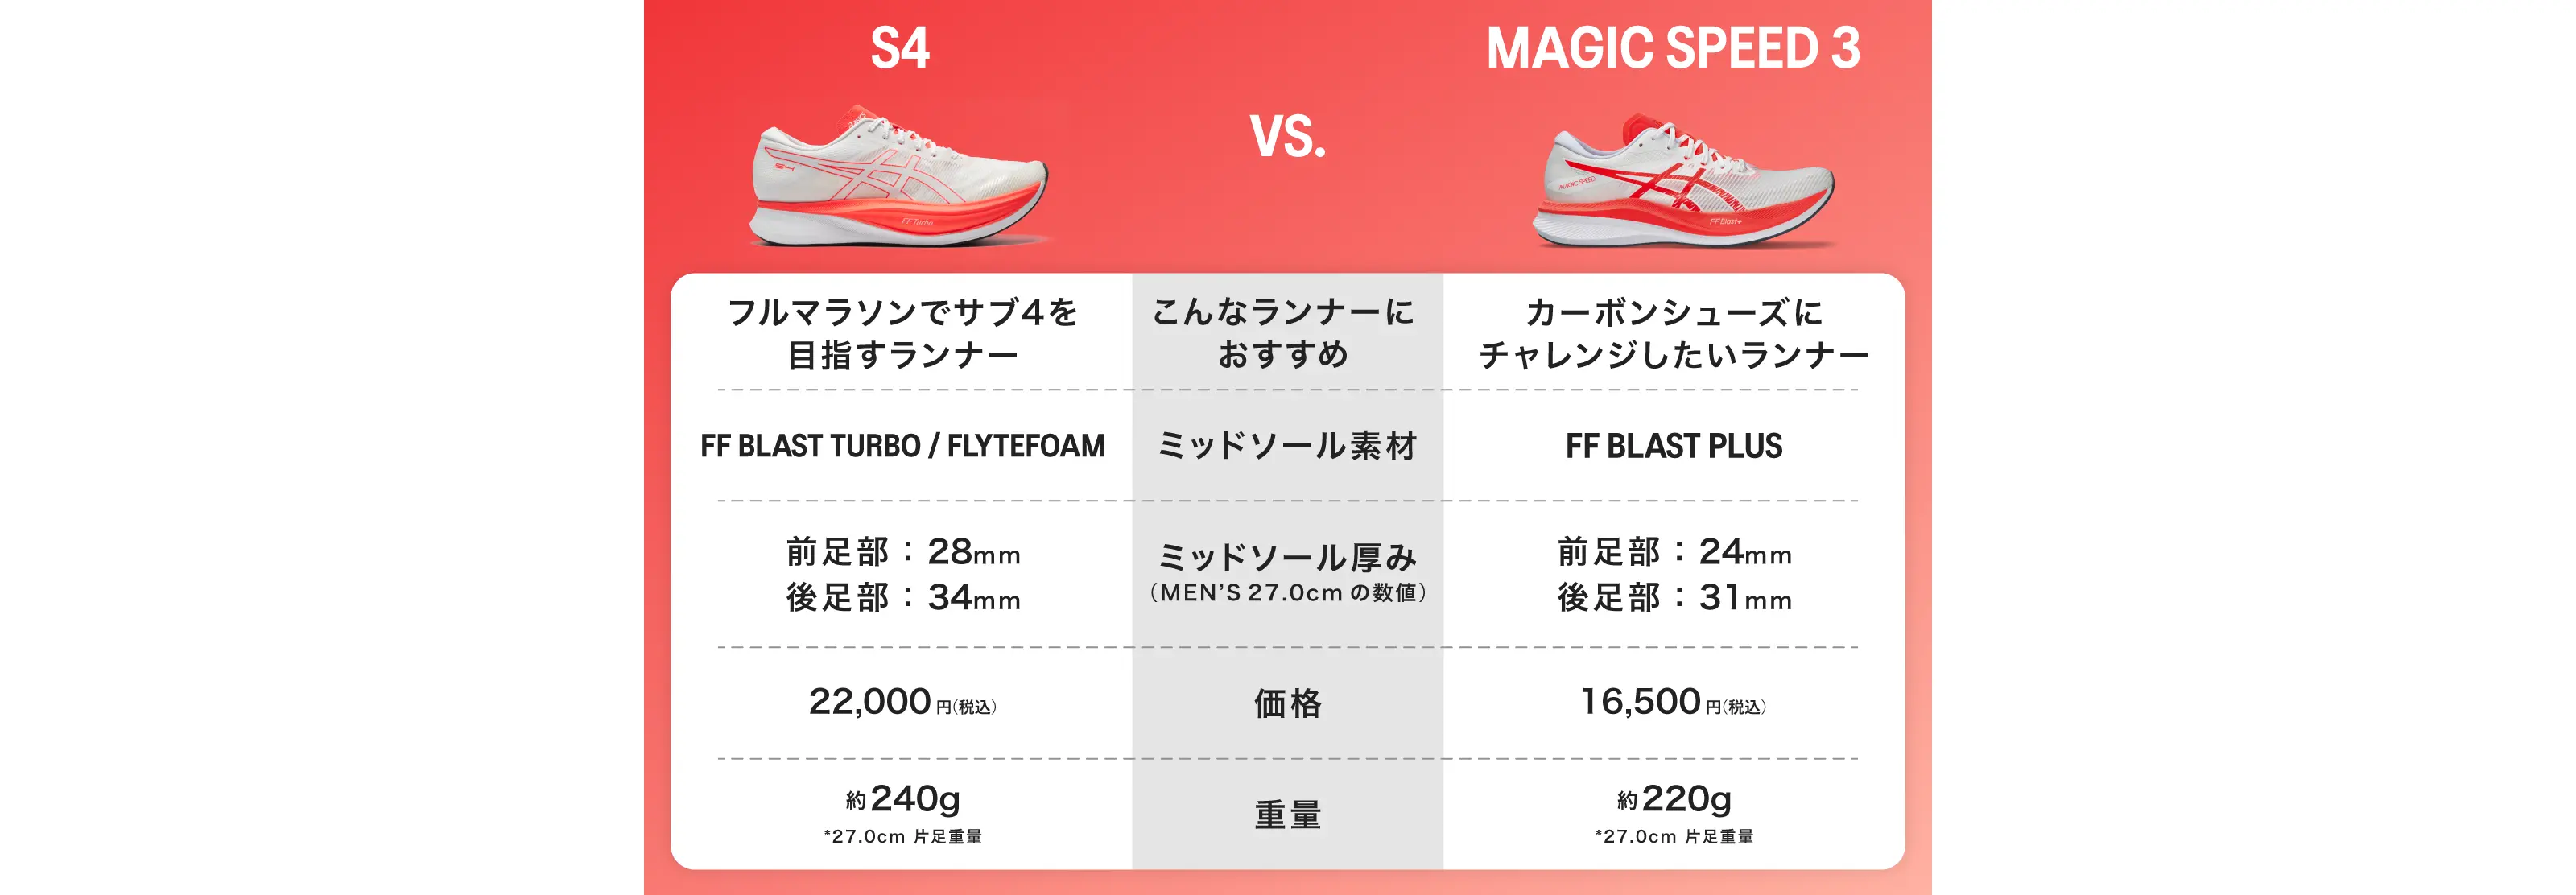 S4 vs MAGIC SPEED 3 比較チャート